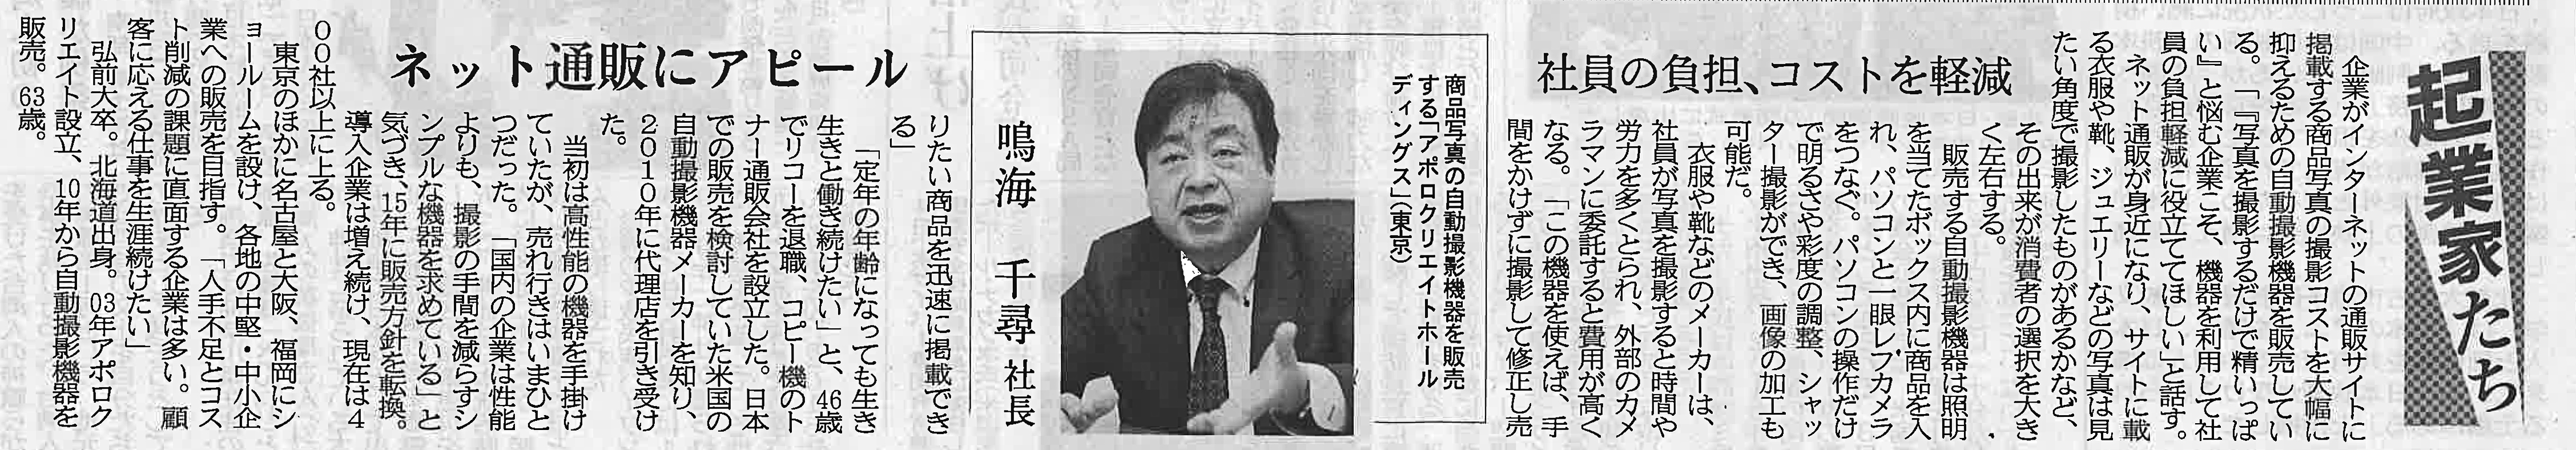 千葉日報にフォトオートメーションについて掲載されました。